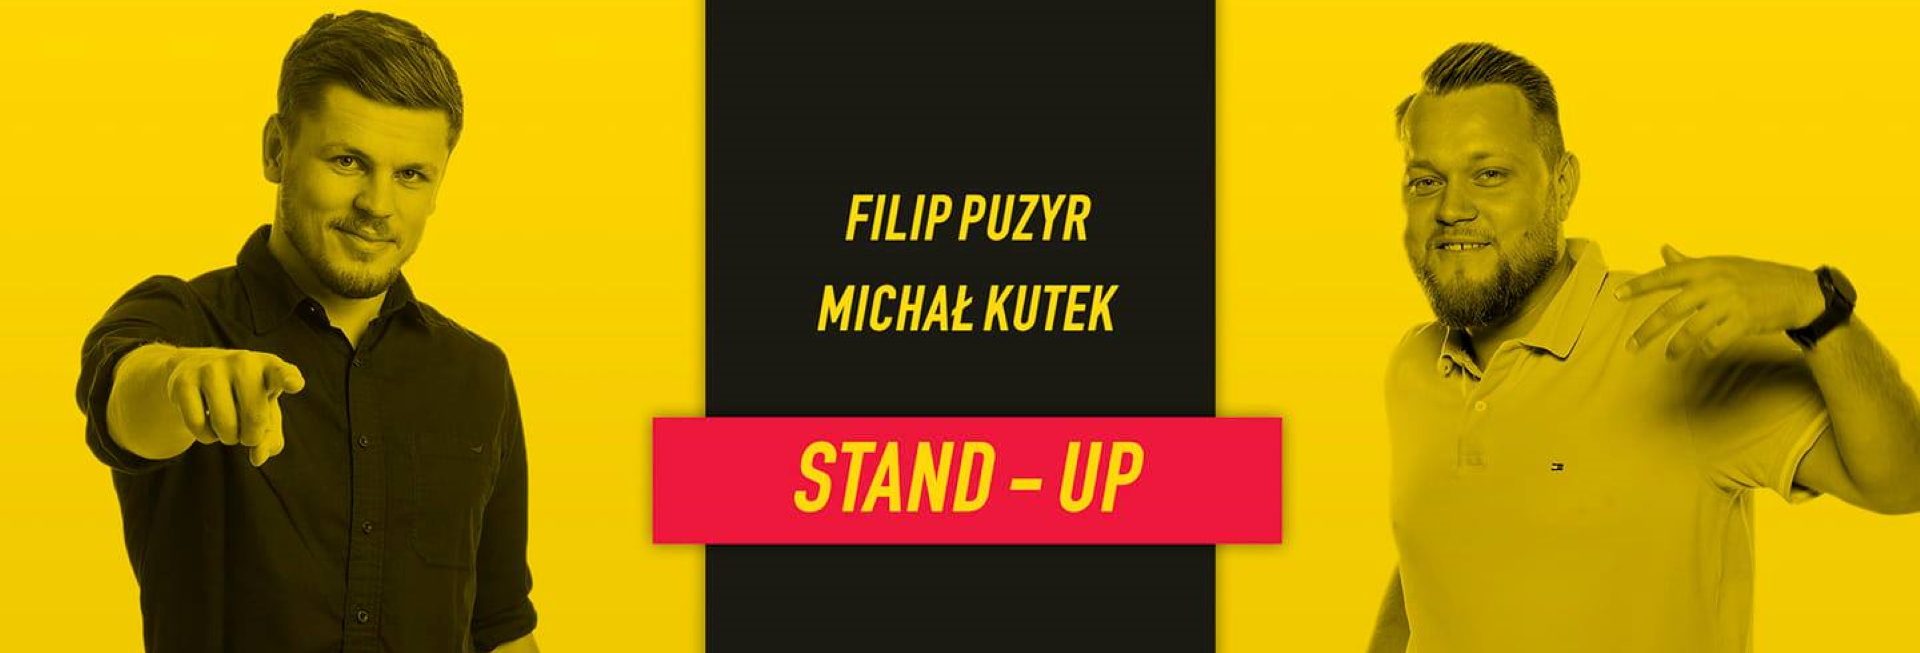 Plakat graficzny zapraszający do Klubu Mjazzga w Elblągu na występ Stand-up: Michał Kutek i Filip Puzyr – Elbląg 2022.